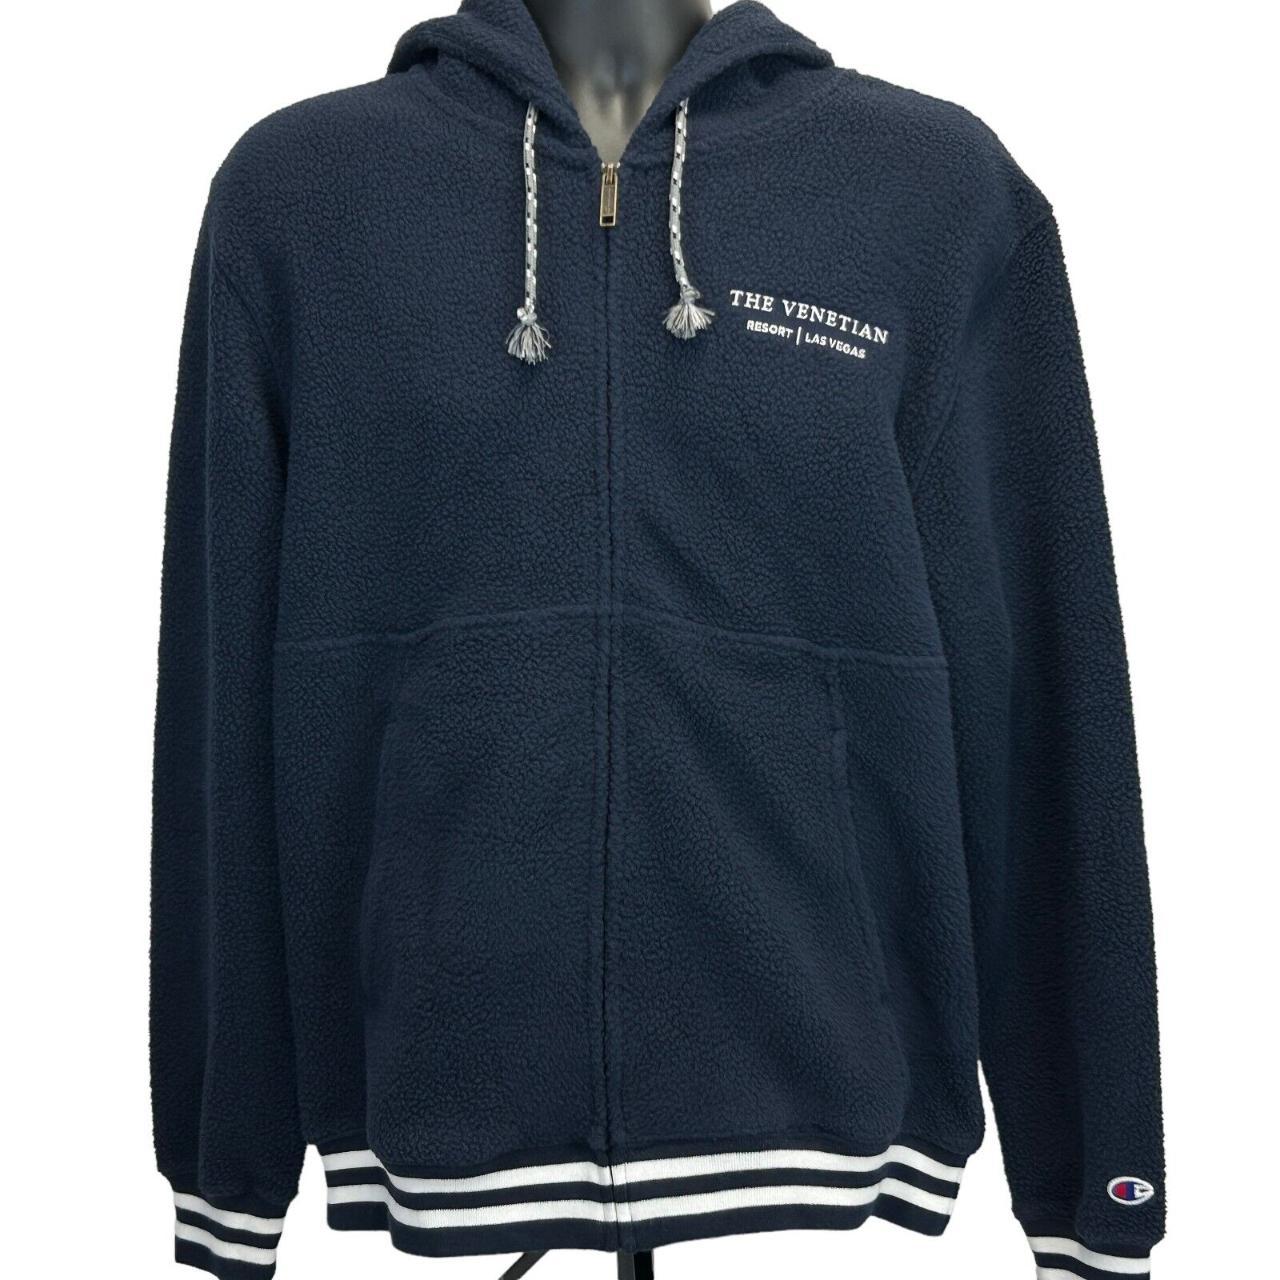 Vintage navy CALI hoodie Size M Length 22 Width - Depop